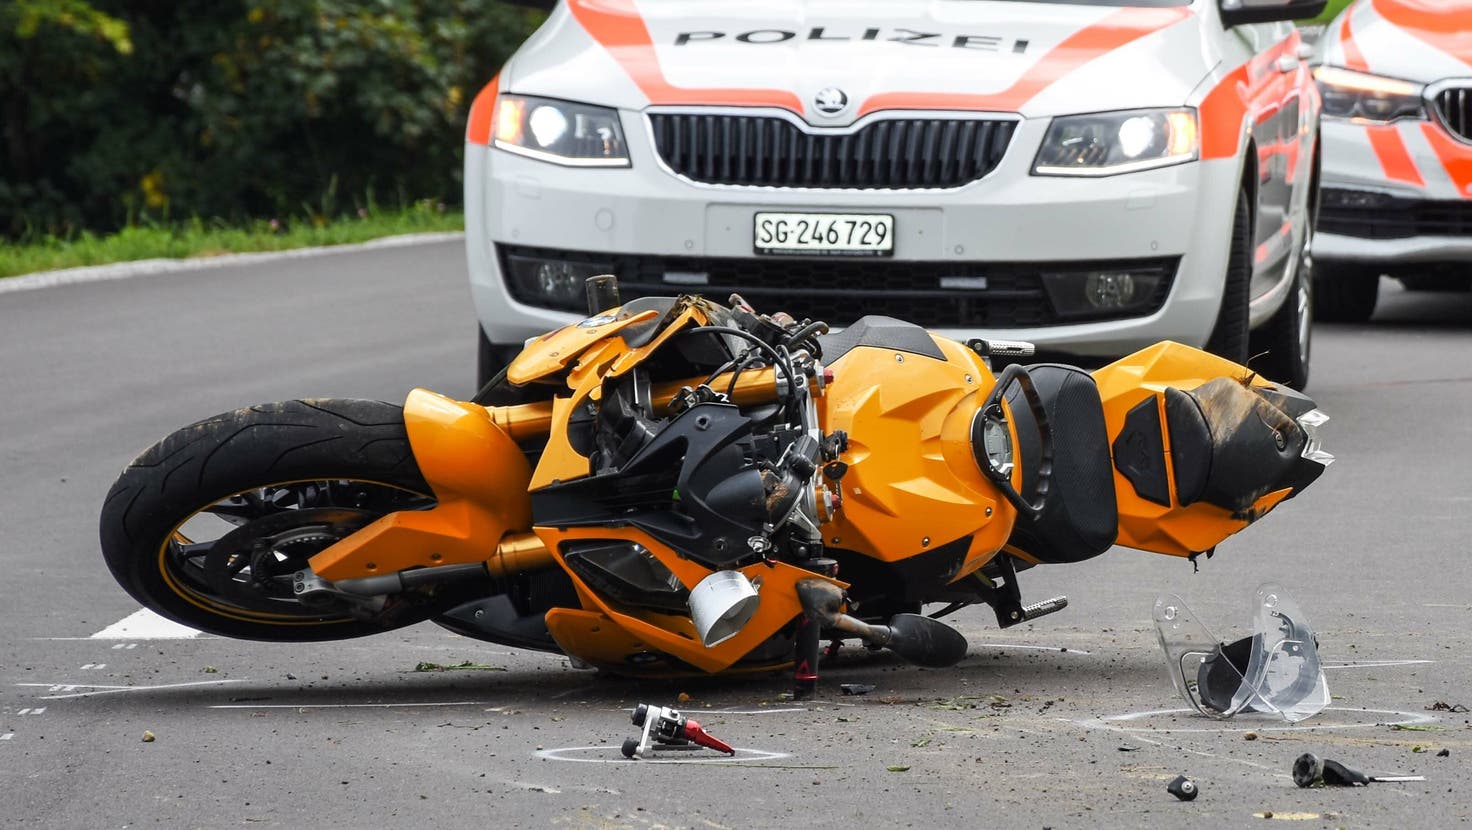 Zum Unfall in Eggersriet kam es, nachdem der 61-jährige Motorradfahrer eine Fahrzeugkolonne zu überholen versucht hatte. In diesem Moment bog der 33-jährige Autofahrer ab, die beiden Fahrzeuge kollidierten. (Bild: Kapo St.Gallen)